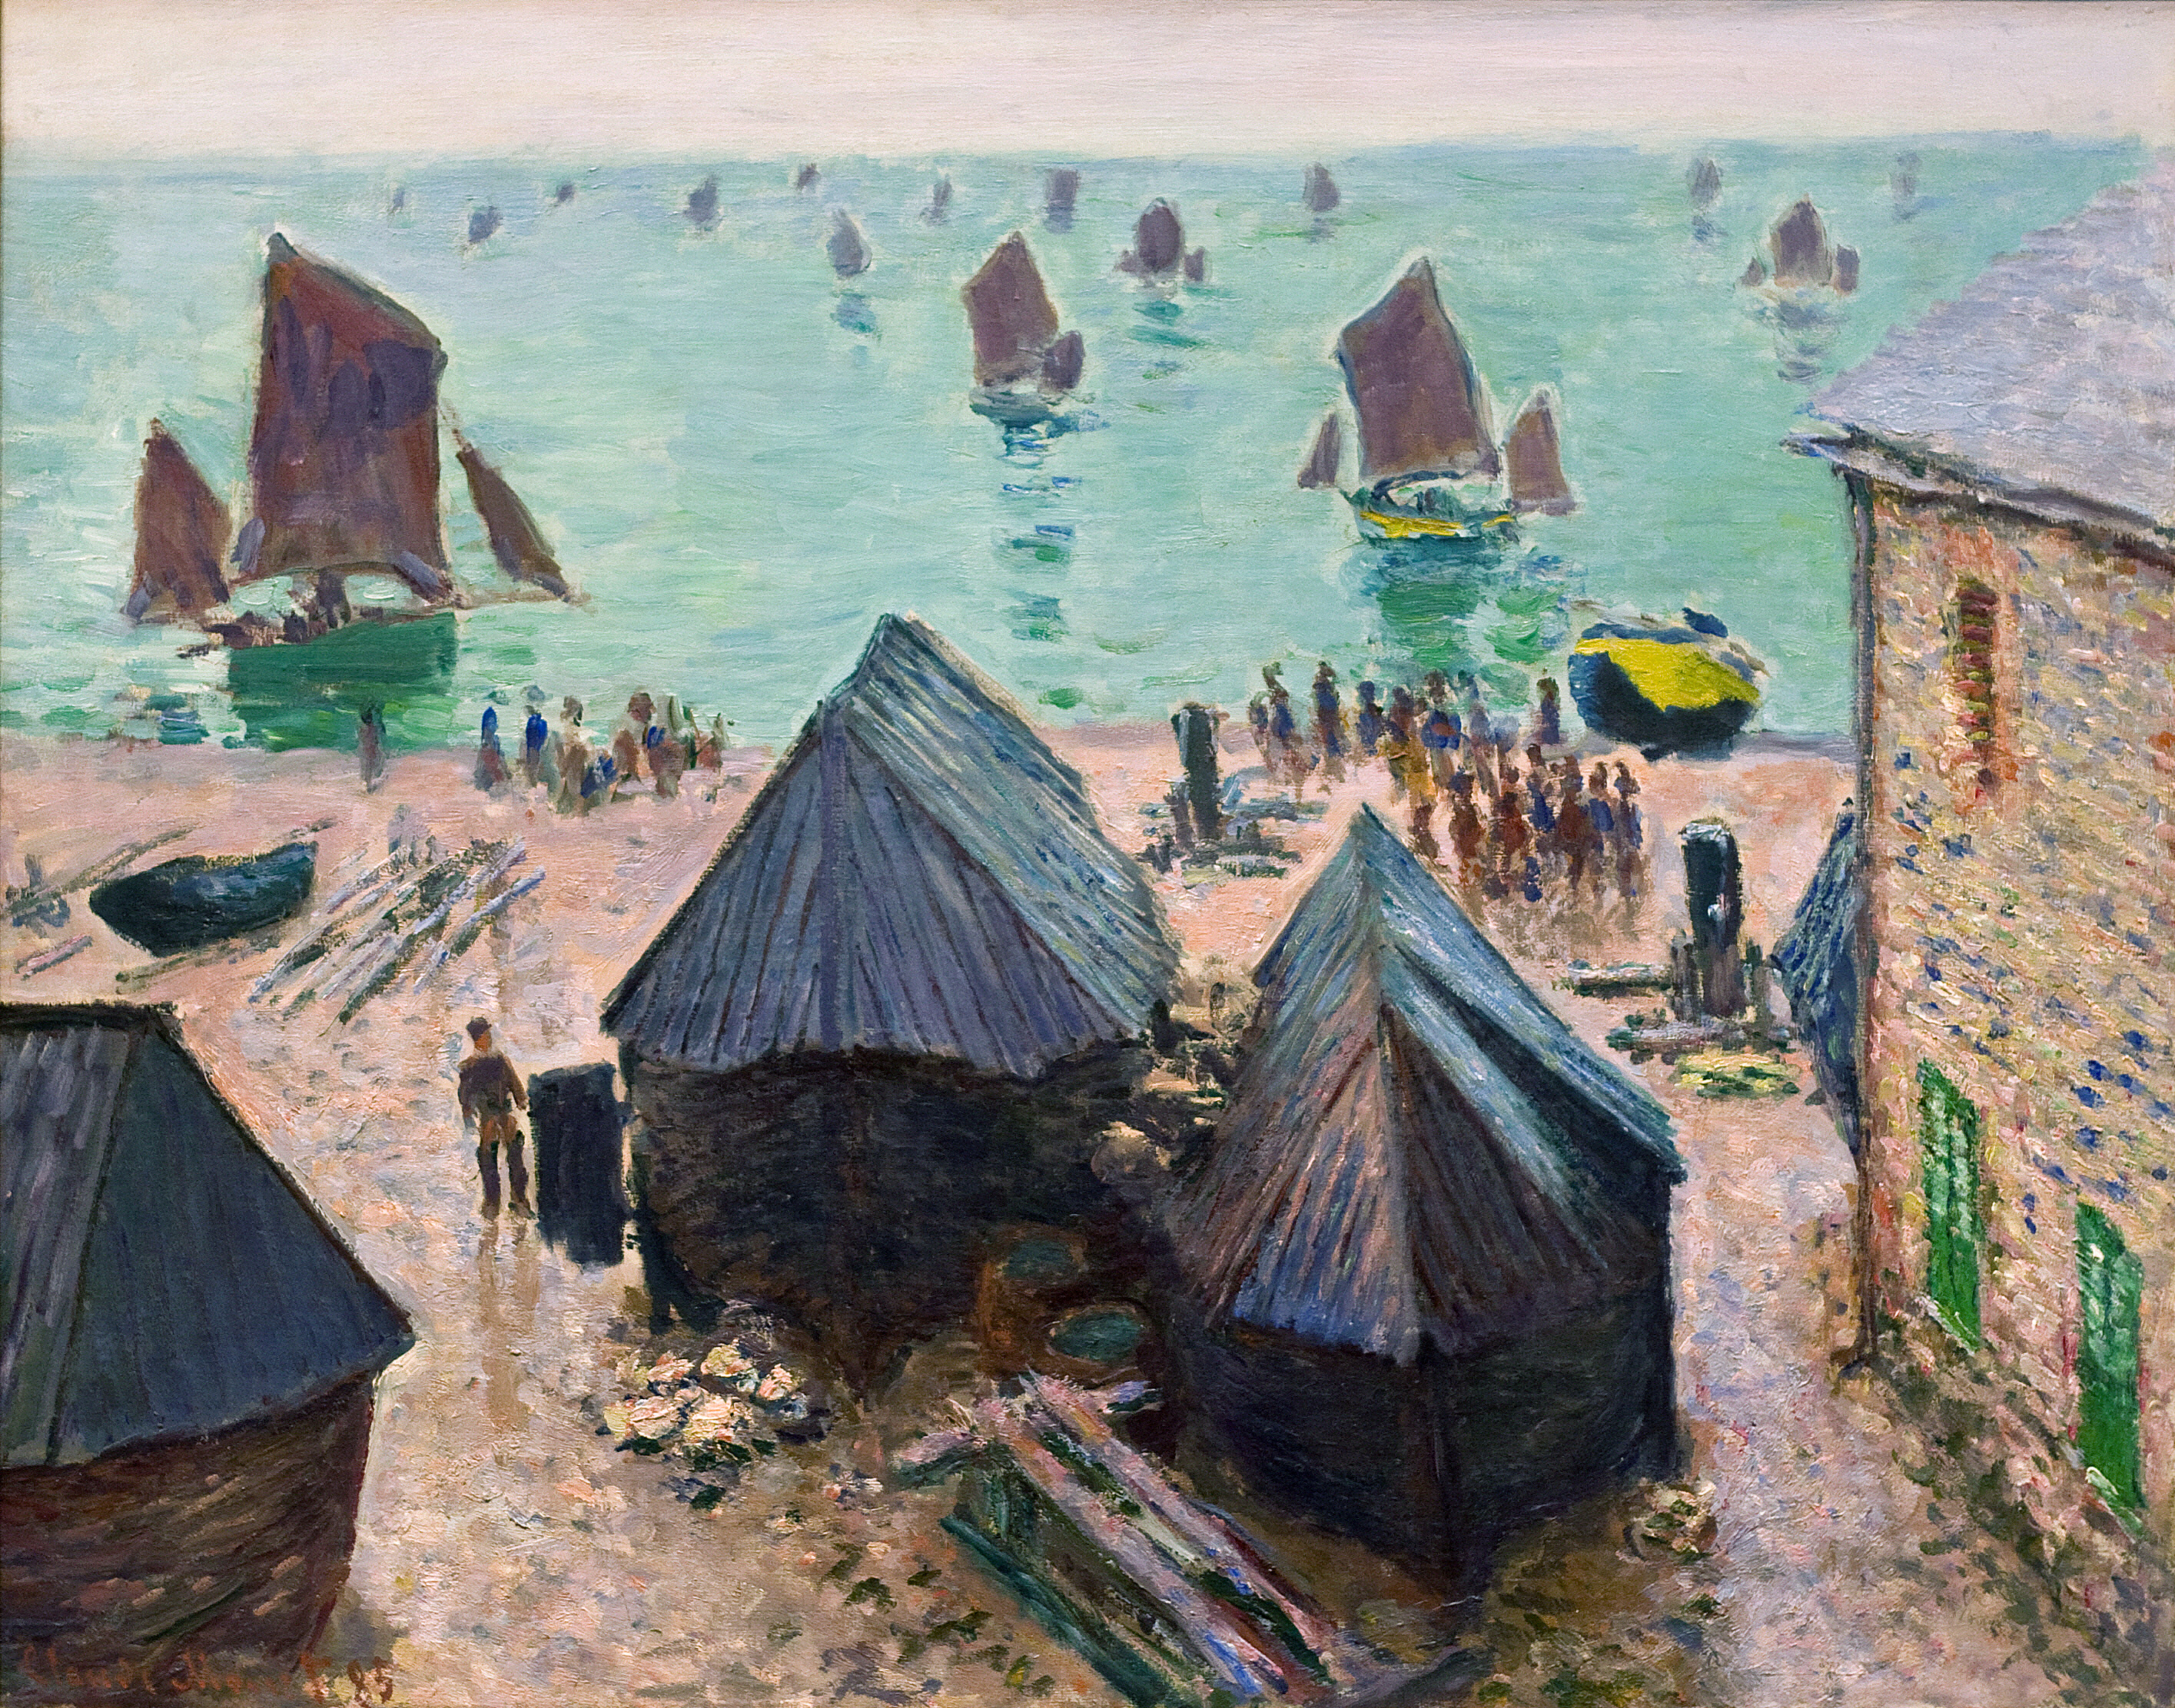 Artworks by Oscar Claude Monet (2 часть) (231 работ) » Страница 4 »  Картины, художники, фотографы на Nevsepic